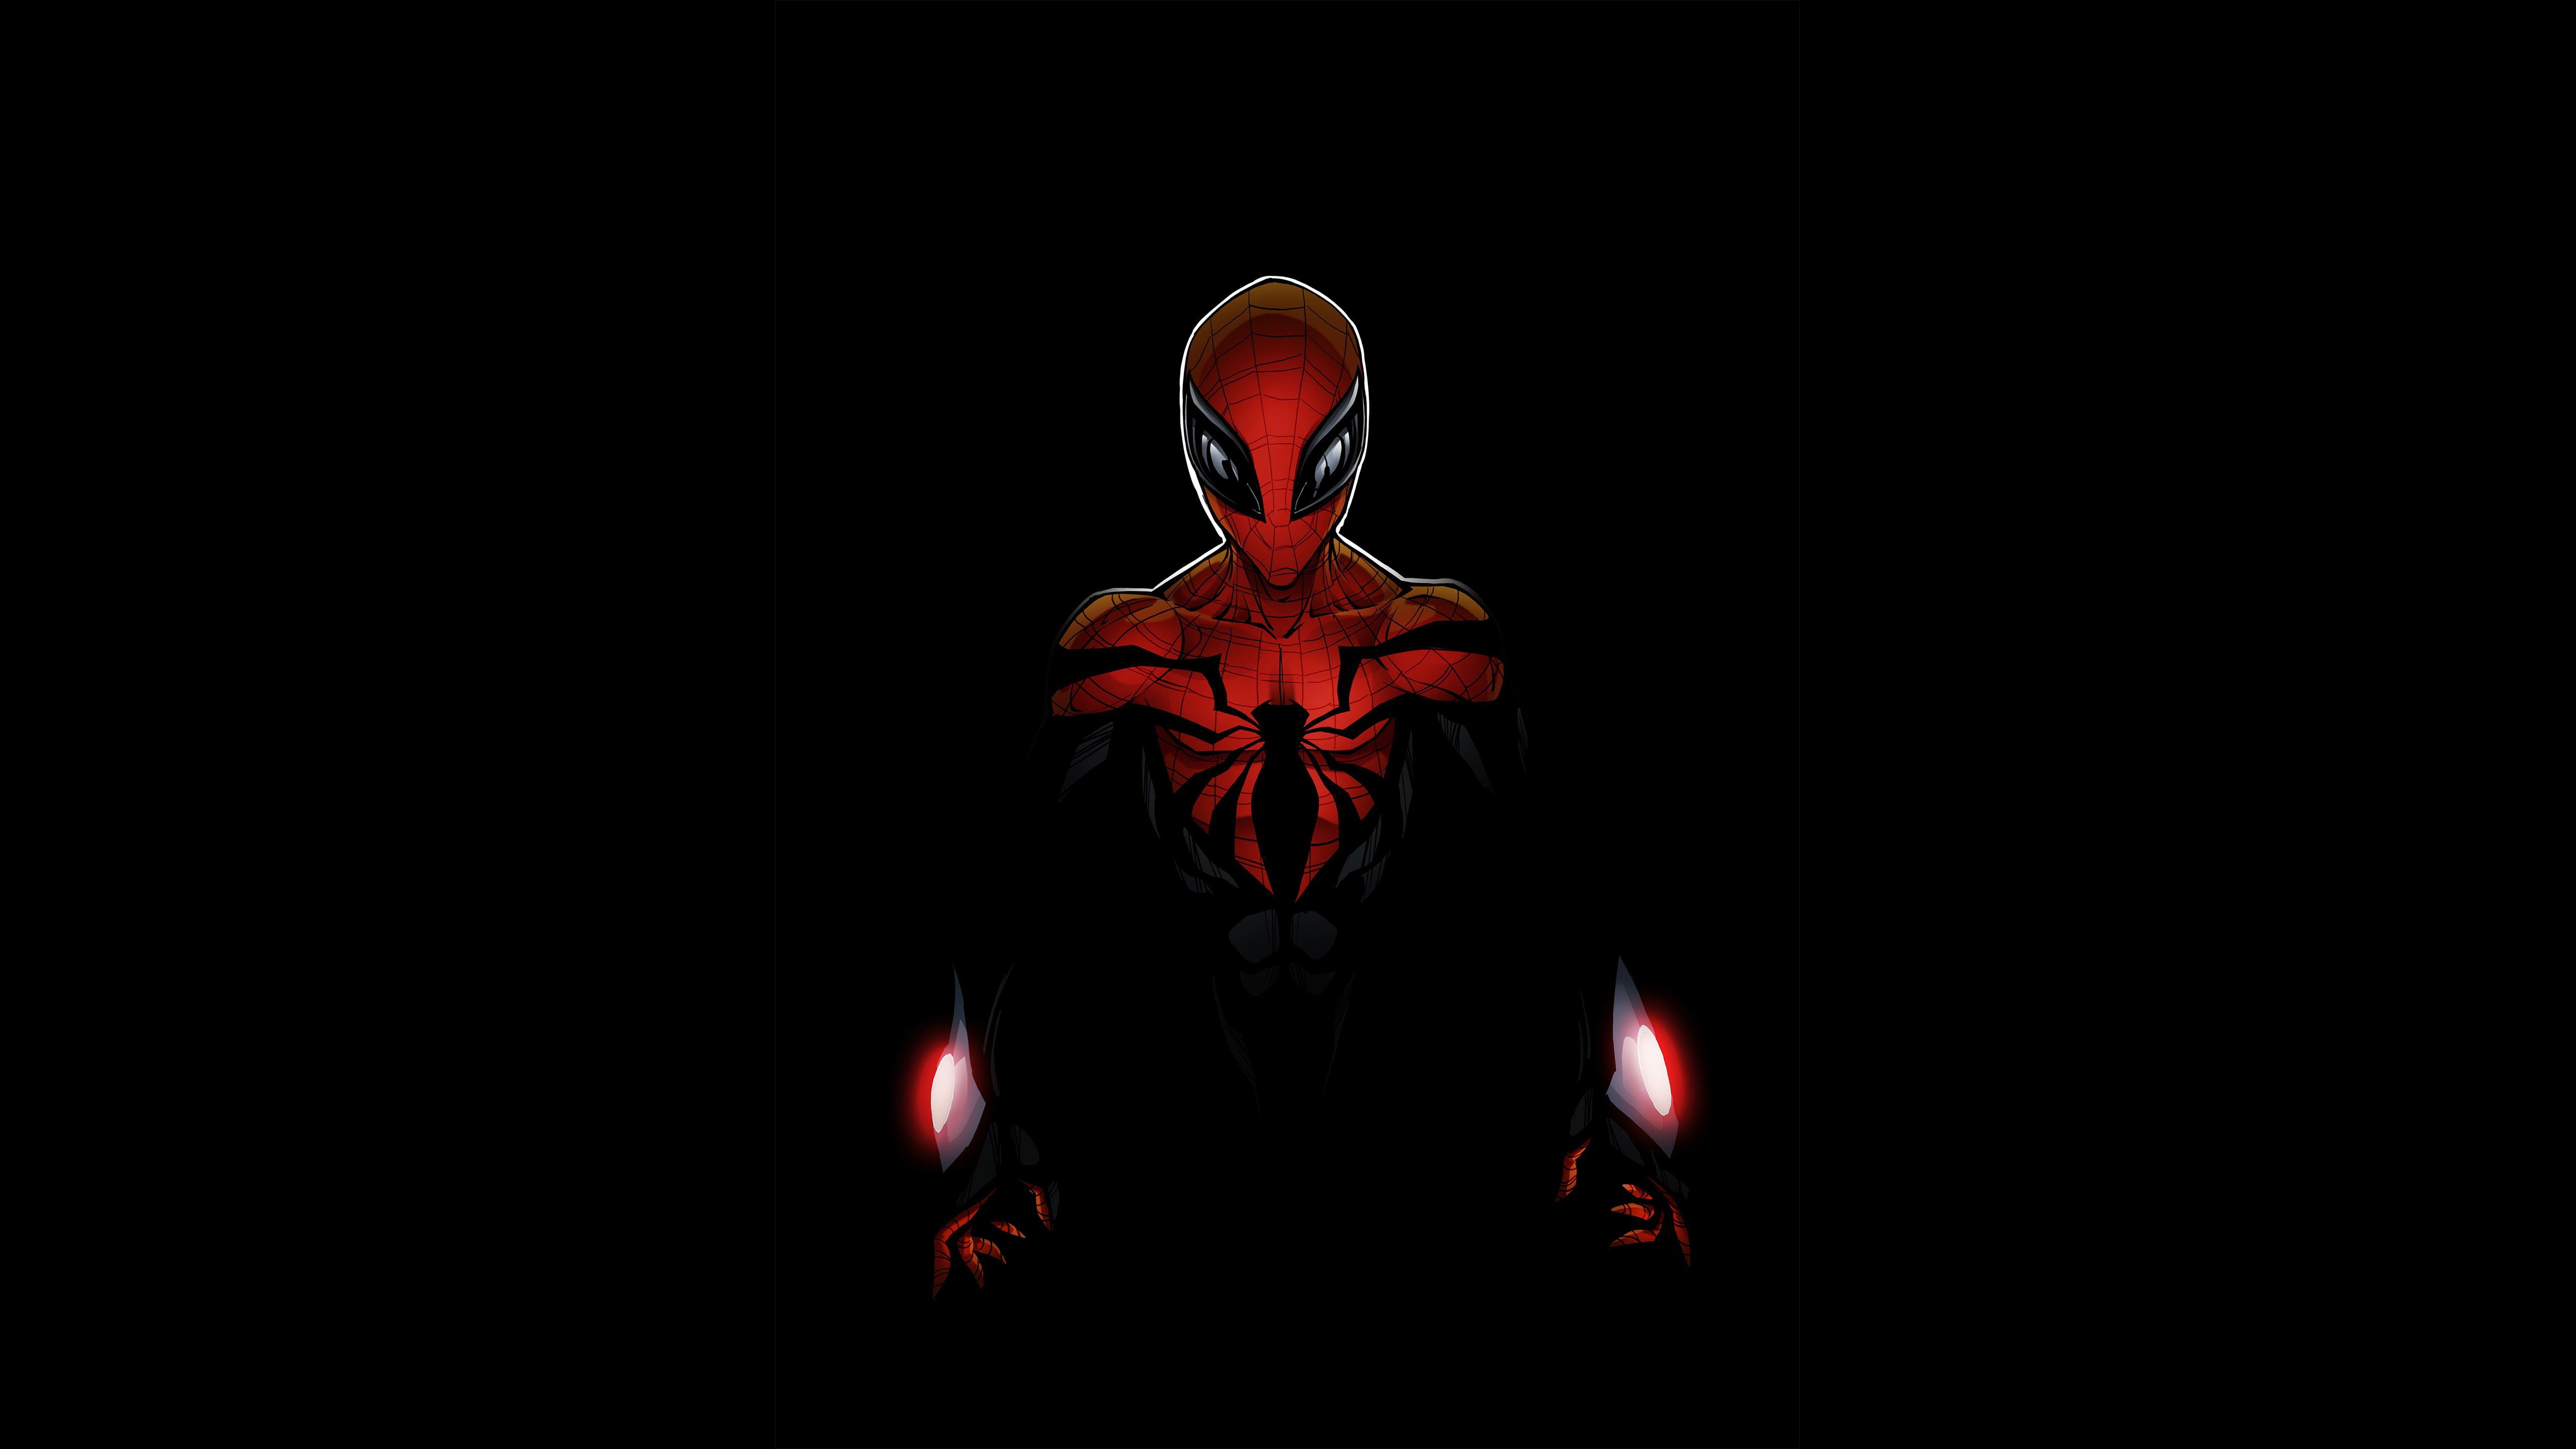 15+] Spider Man 5k Wallpapers - WallpaperSafari